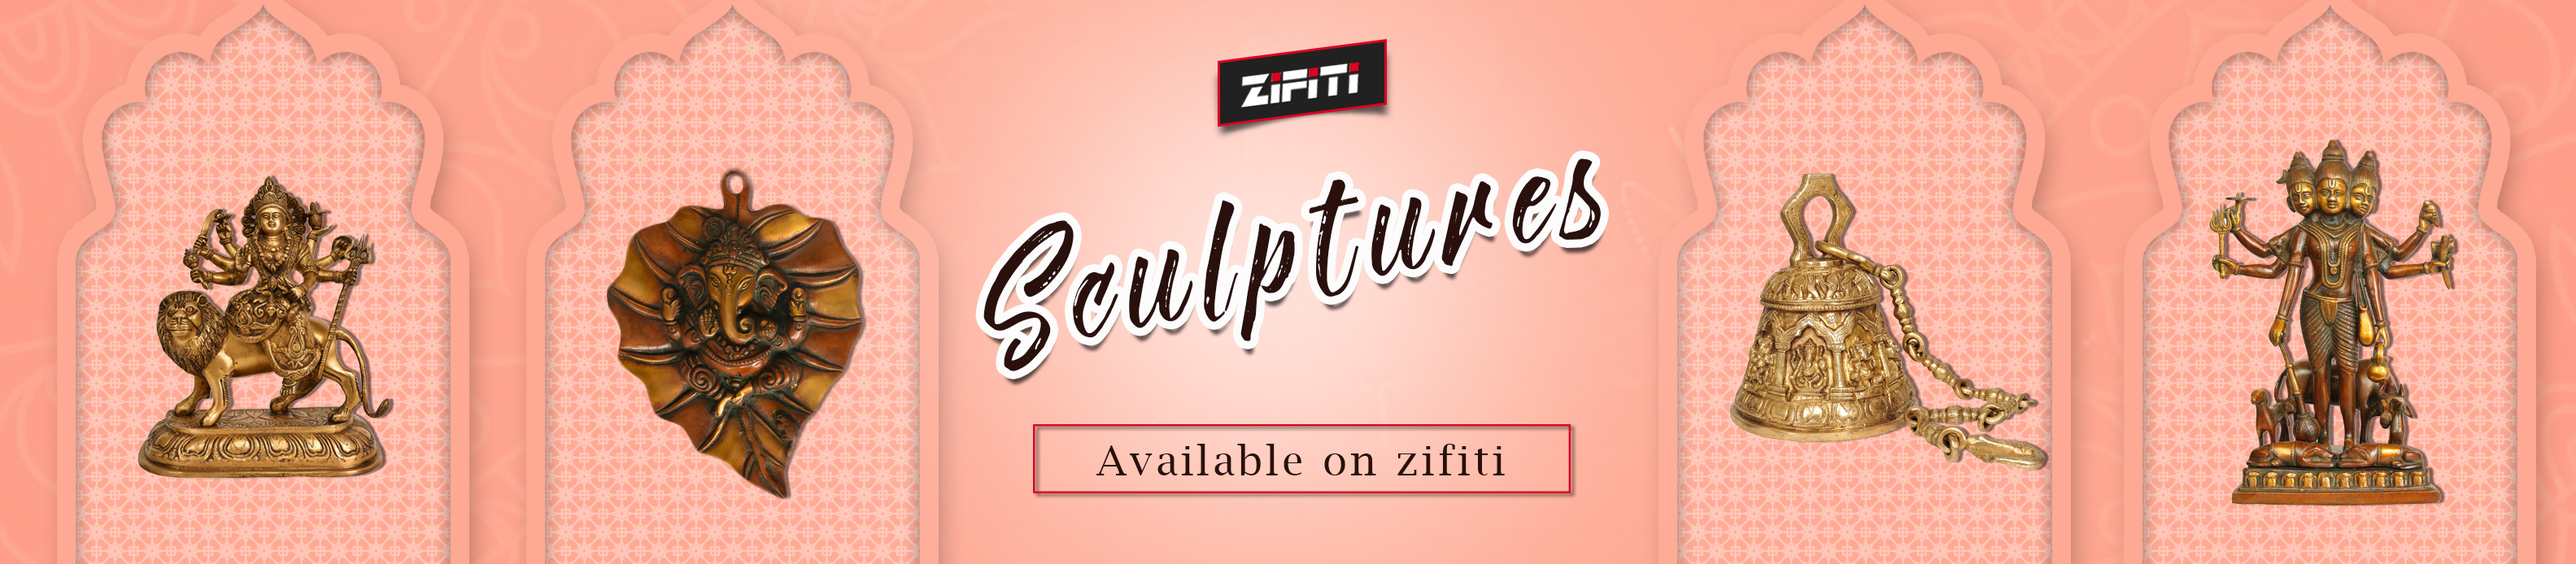 ZiFiti - Indian Marketplace